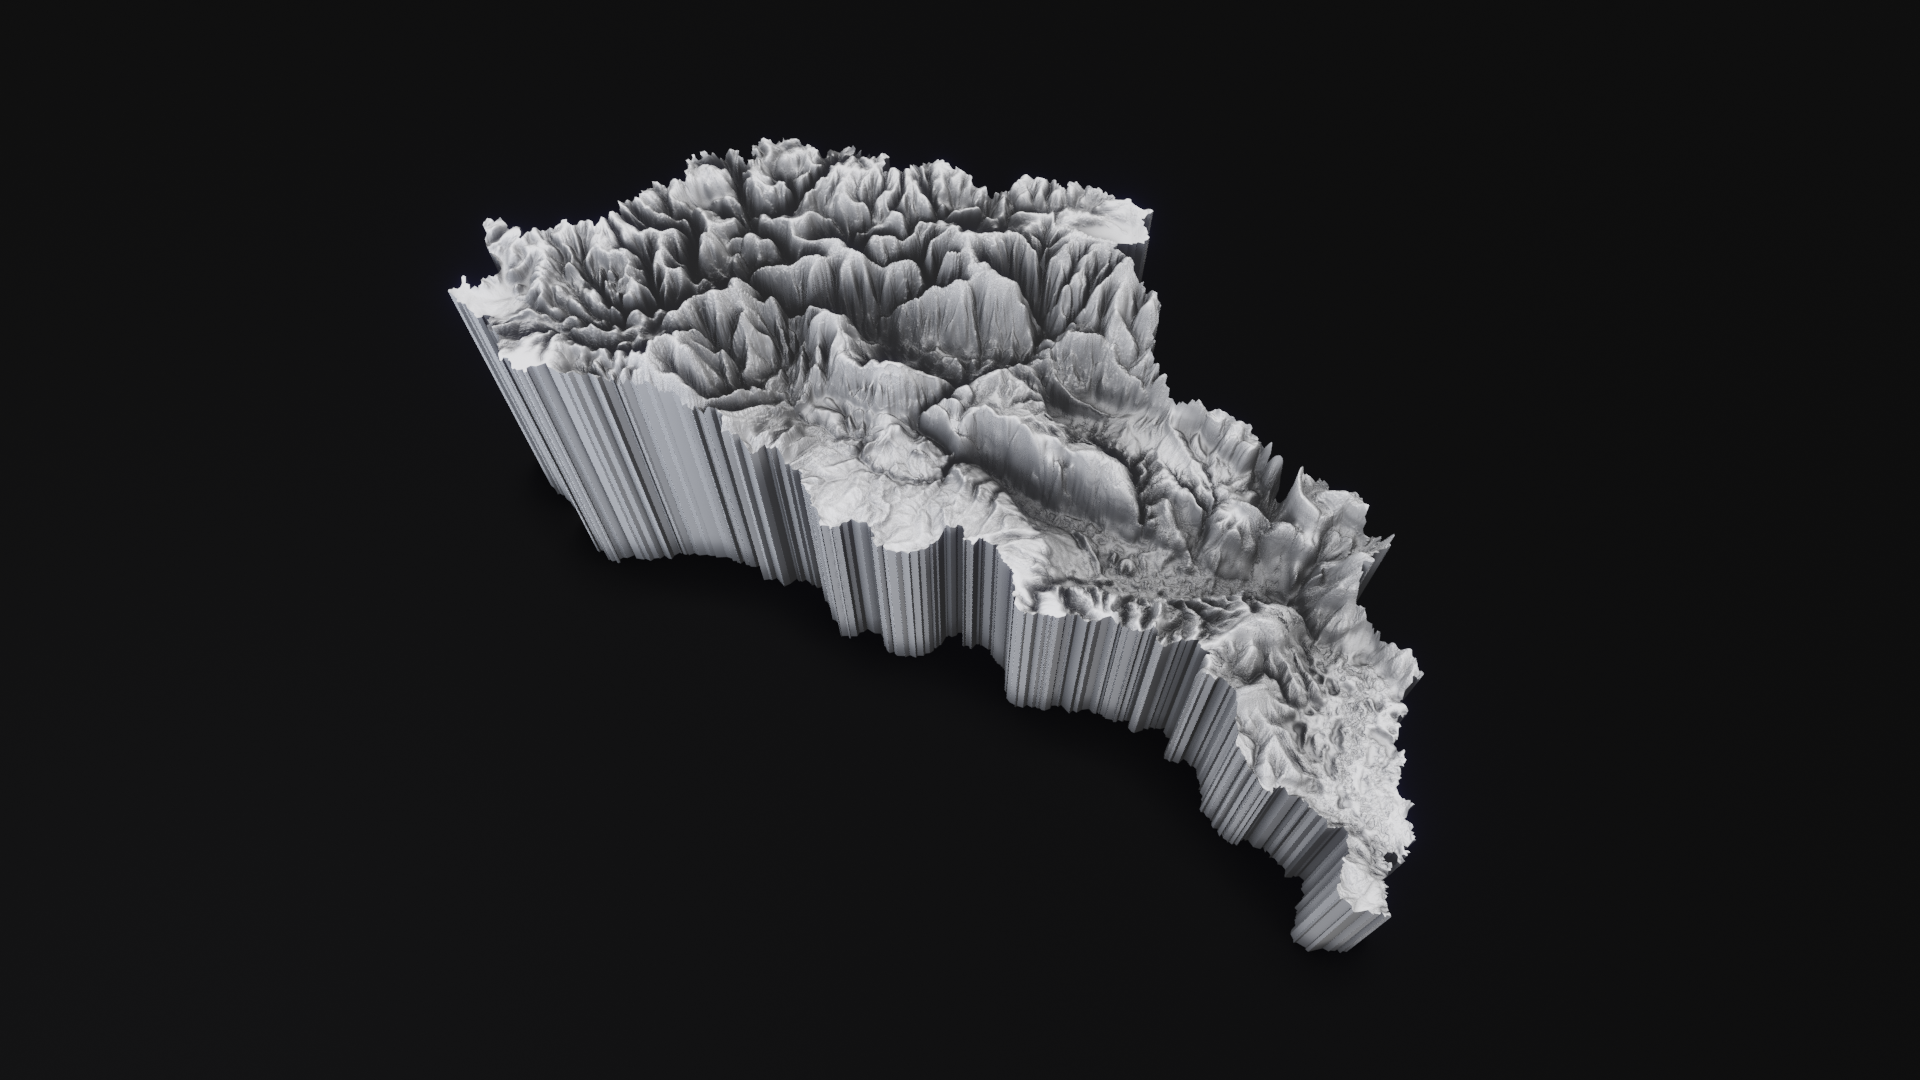 Représentation cartographique 3D basée sur des données topographiques